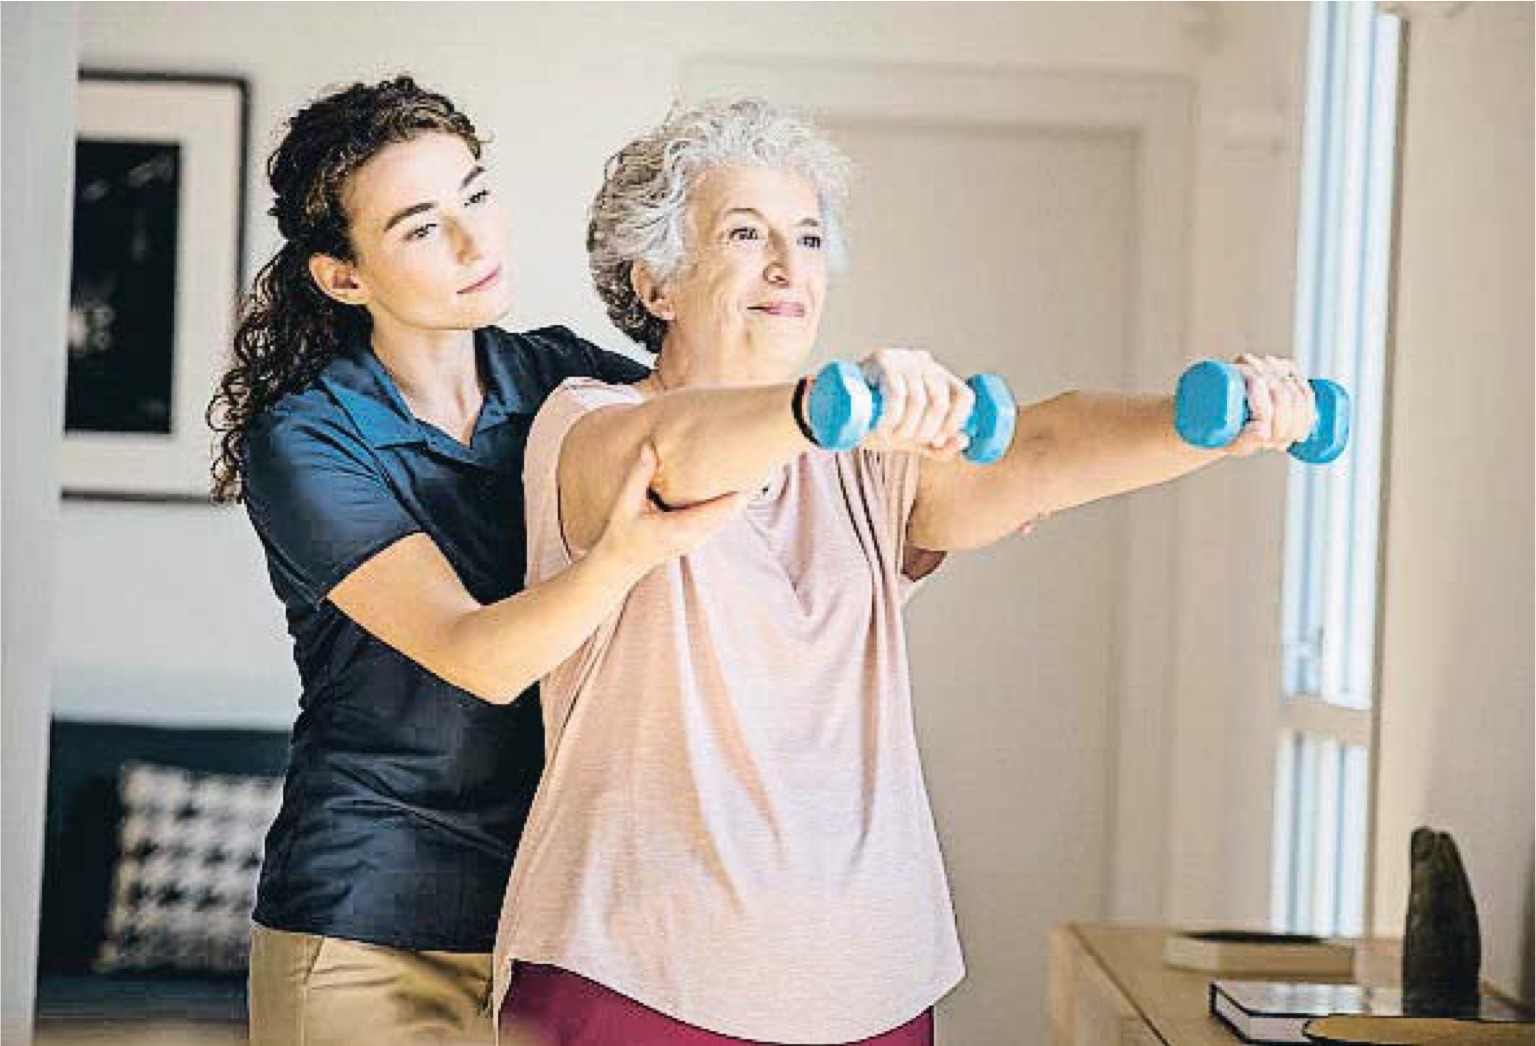 Chica joven ayudando a una mujer mayor a hacer ejercicio con unas mancuernas